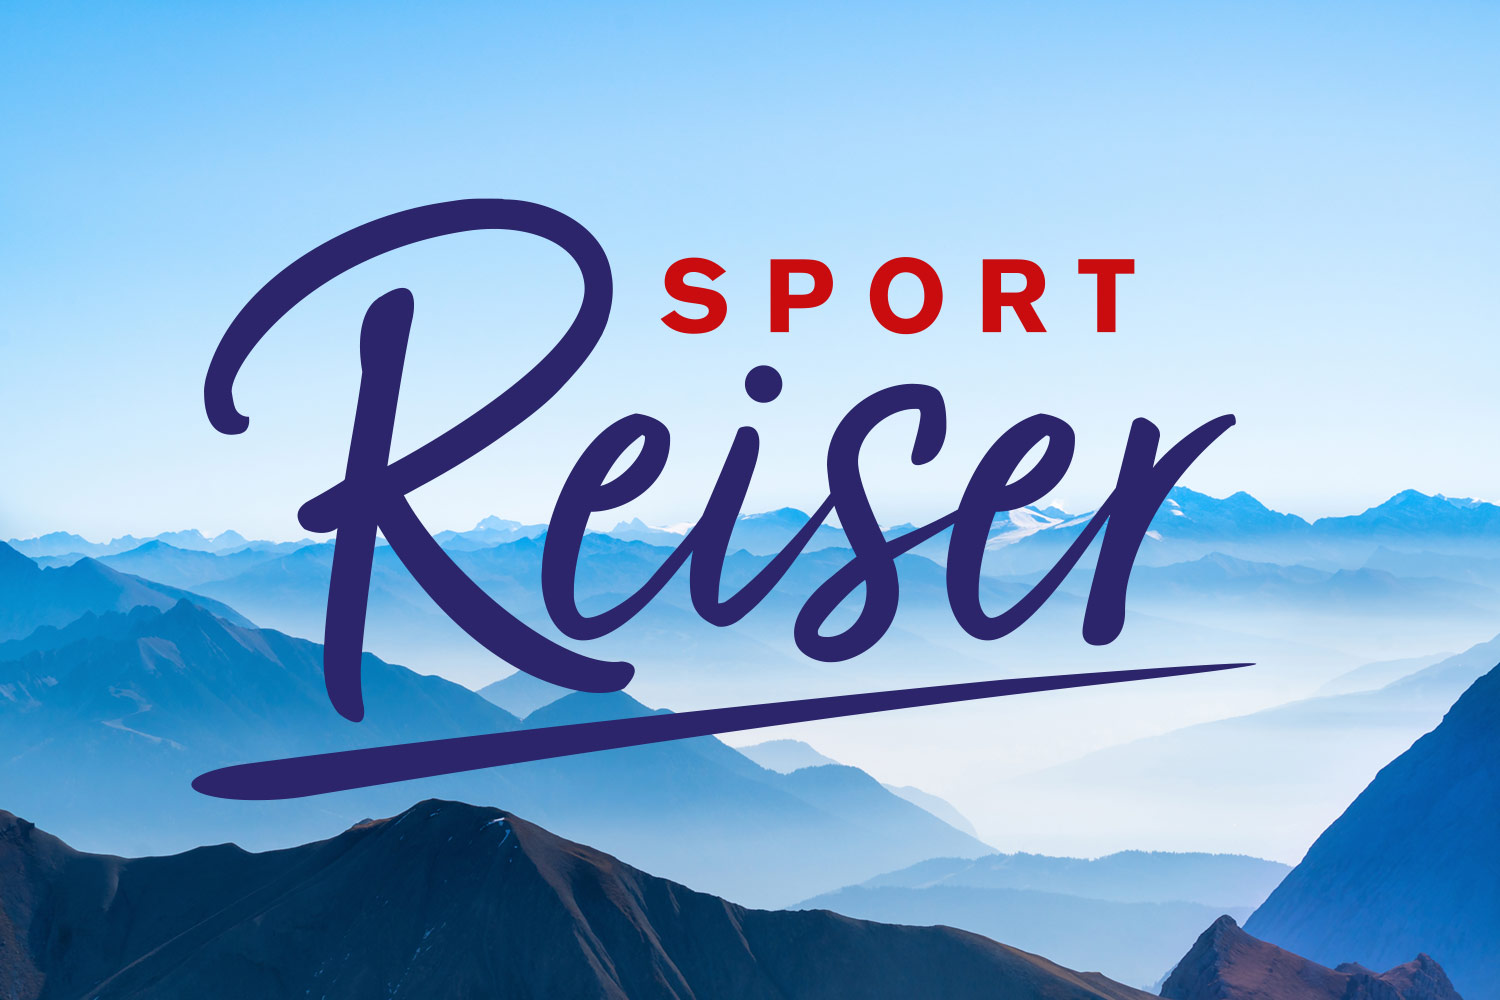 (c) Sport-reiser.com